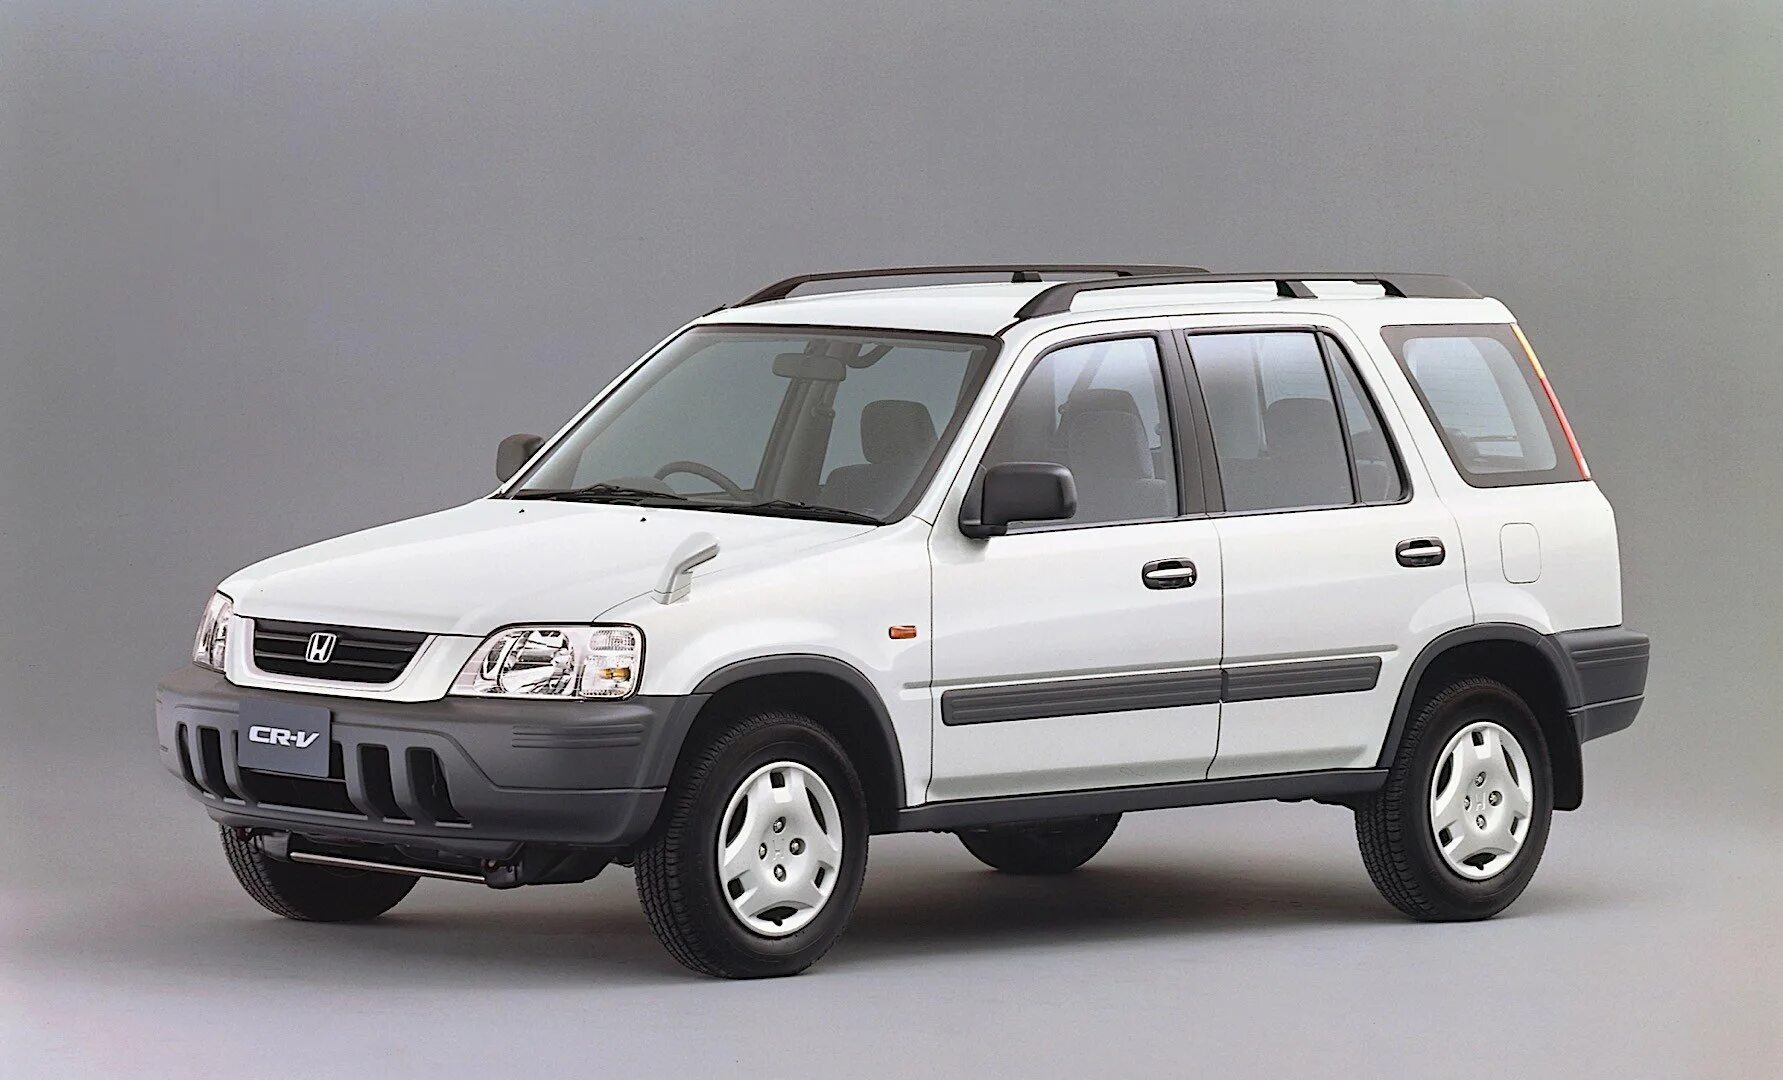 Хонда црв 1997 год. Honda CRV 1998. Хонда CRV 1996. Honda CRV 1995. Honda CR-V 1998.